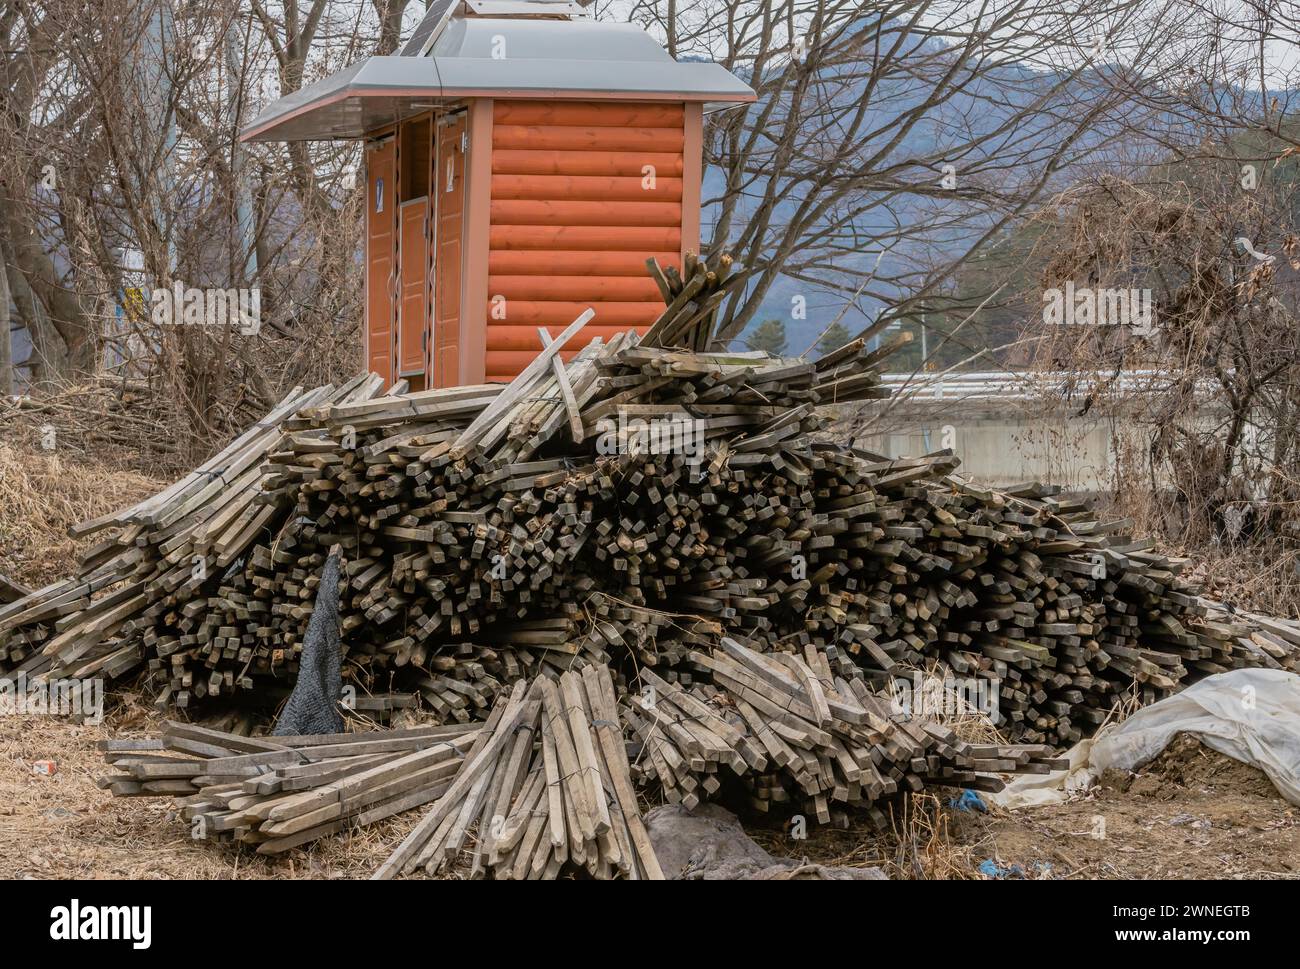 Pila de estacas de madera utilizadas en la agricultura de ginseng apiladas junto al baño público de madera roja en el área silvestre en el frío día de invierno en Corea del Sur Foto de stock